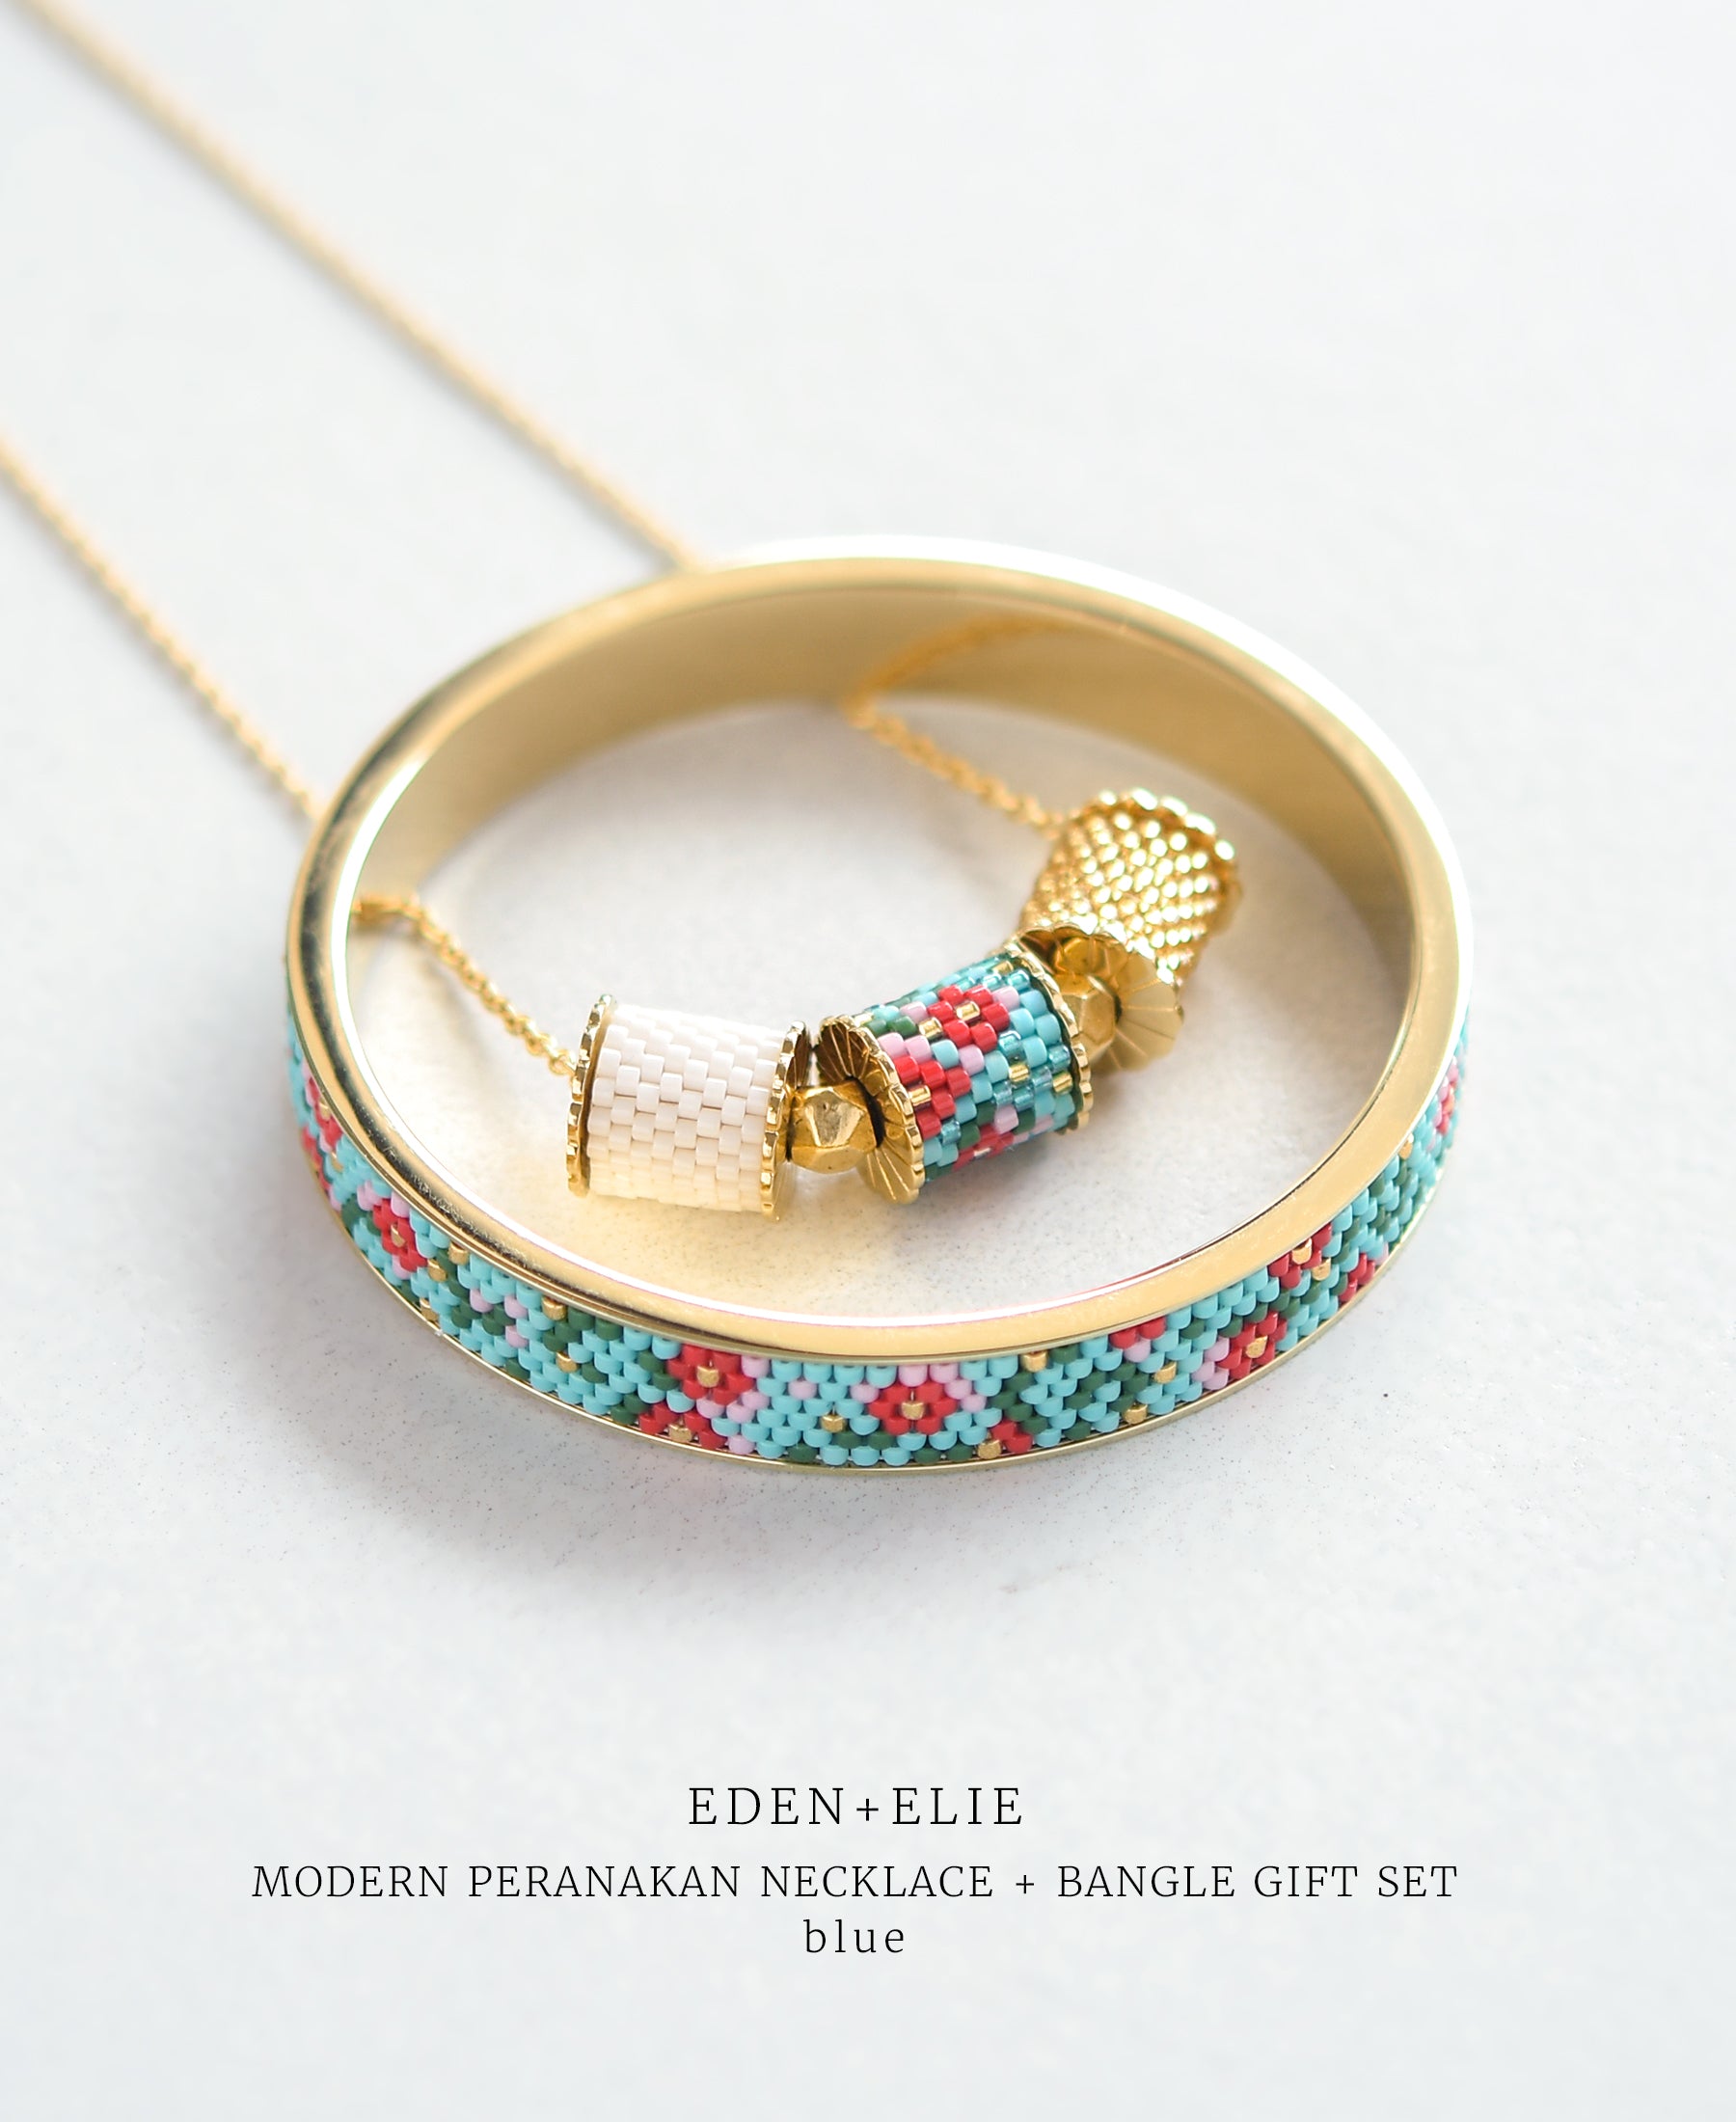 EDEN + ELIE Modern Peranakan adjustable length necklace + bangle gift set - blue